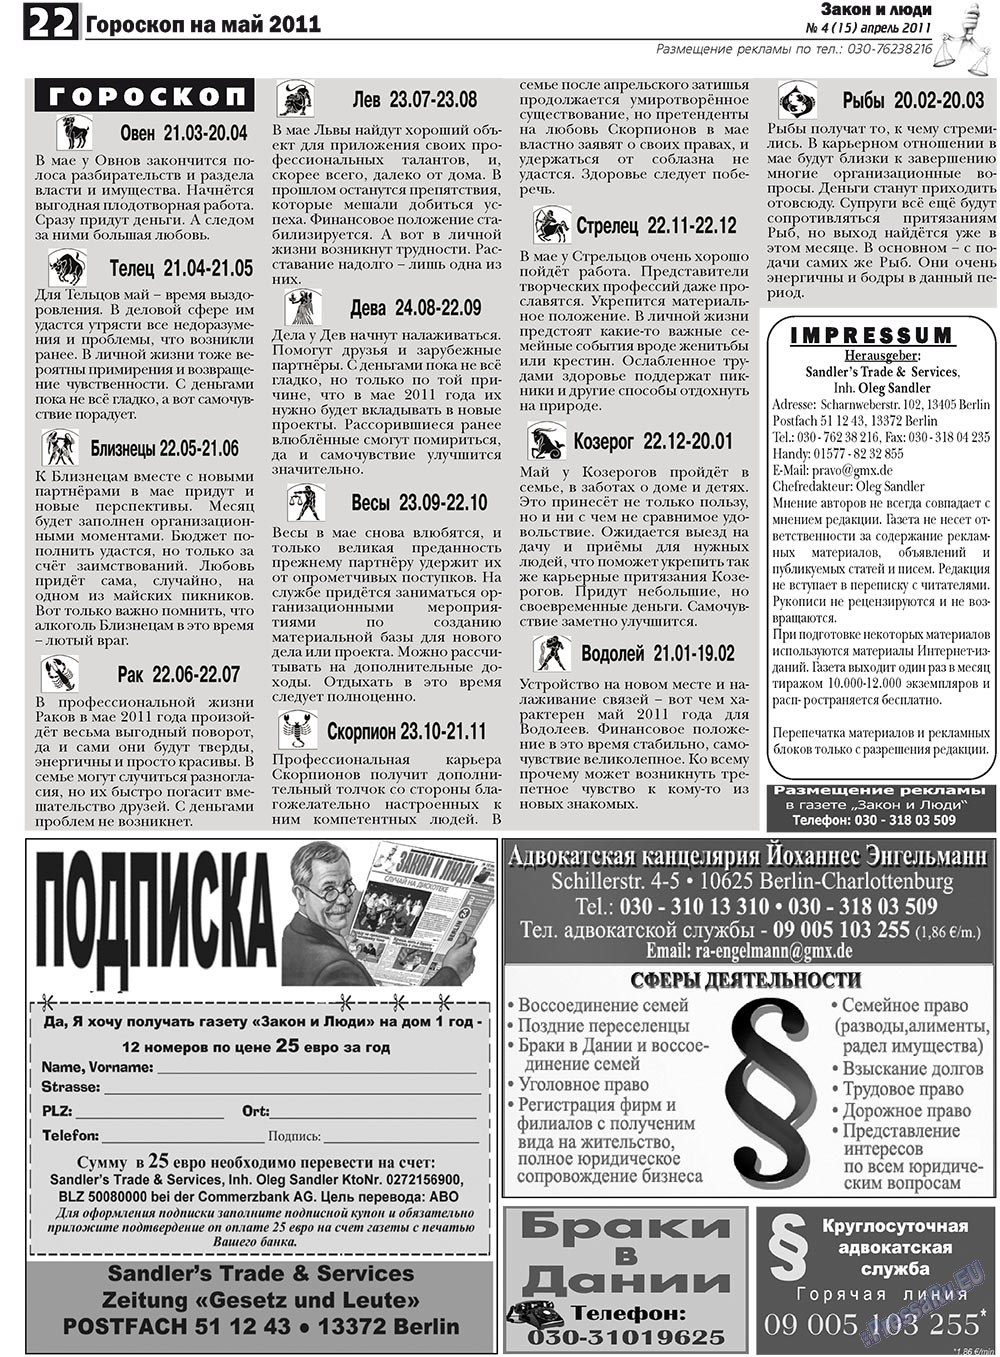 Закон и люди, газета. 2011 №4 стр.22